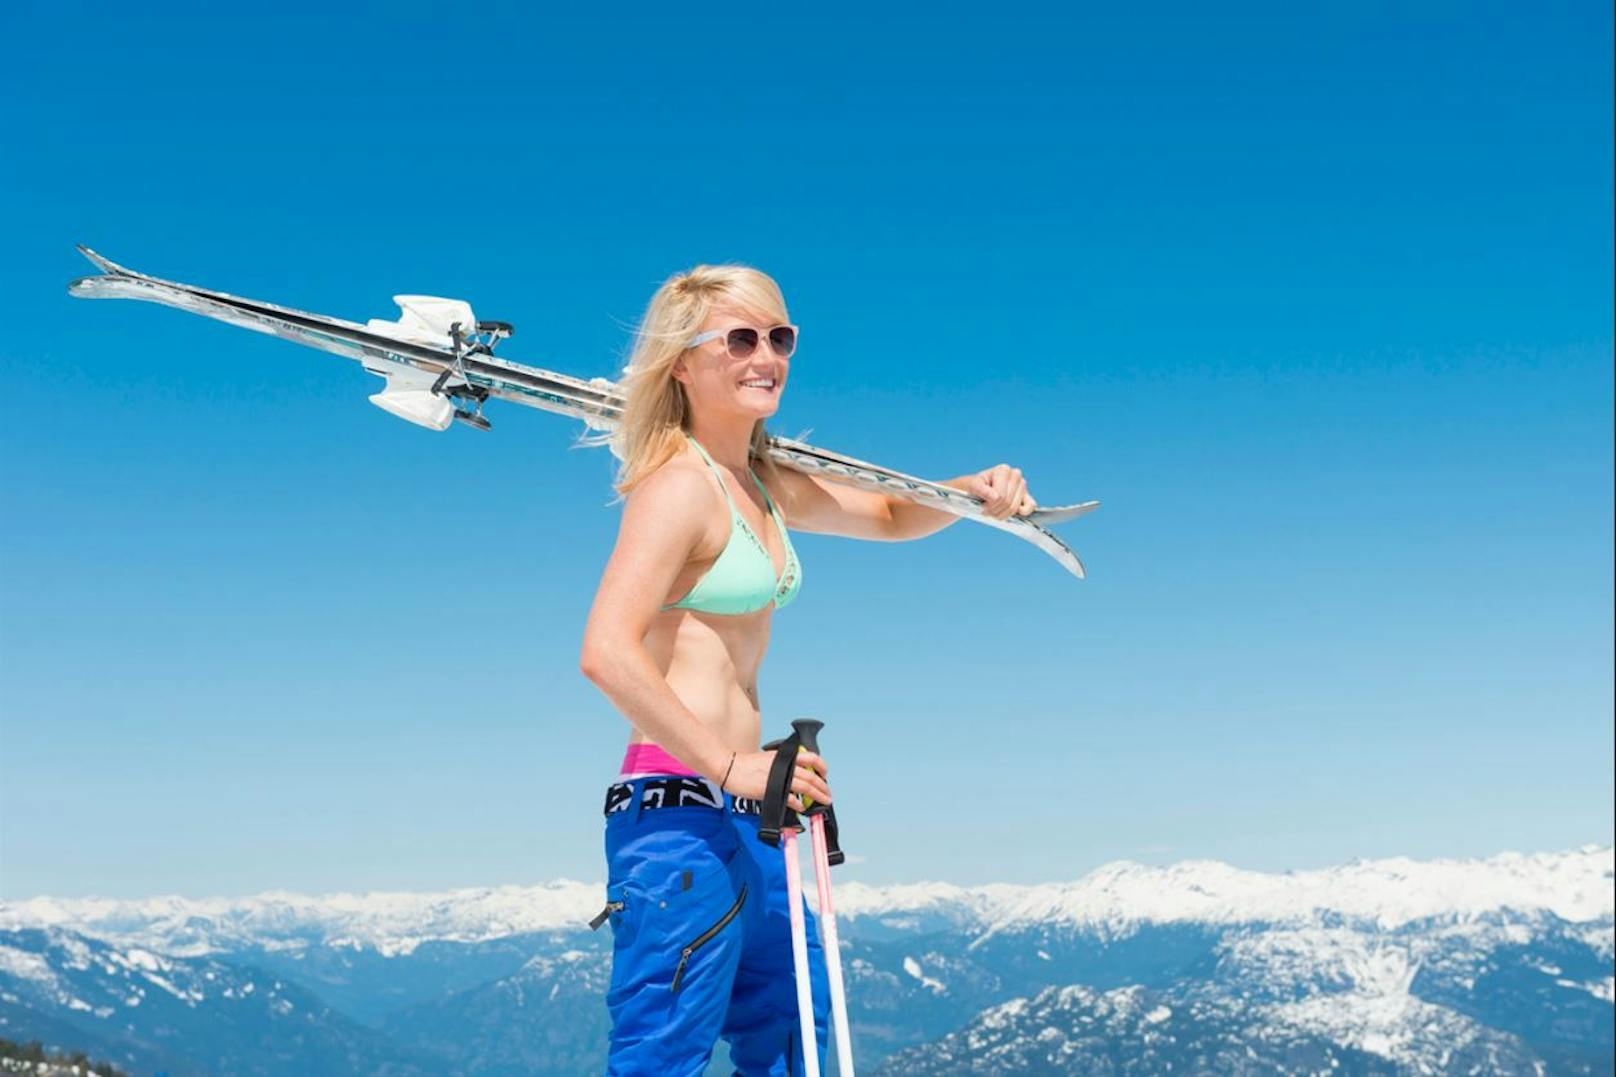 Die offizielle Ski-Saison mag zwar noch nicht eröffnet sein, aber an diesen Orten kannst du deine Skischuhe bereits anziehen und im Slalom hinunterrasen.